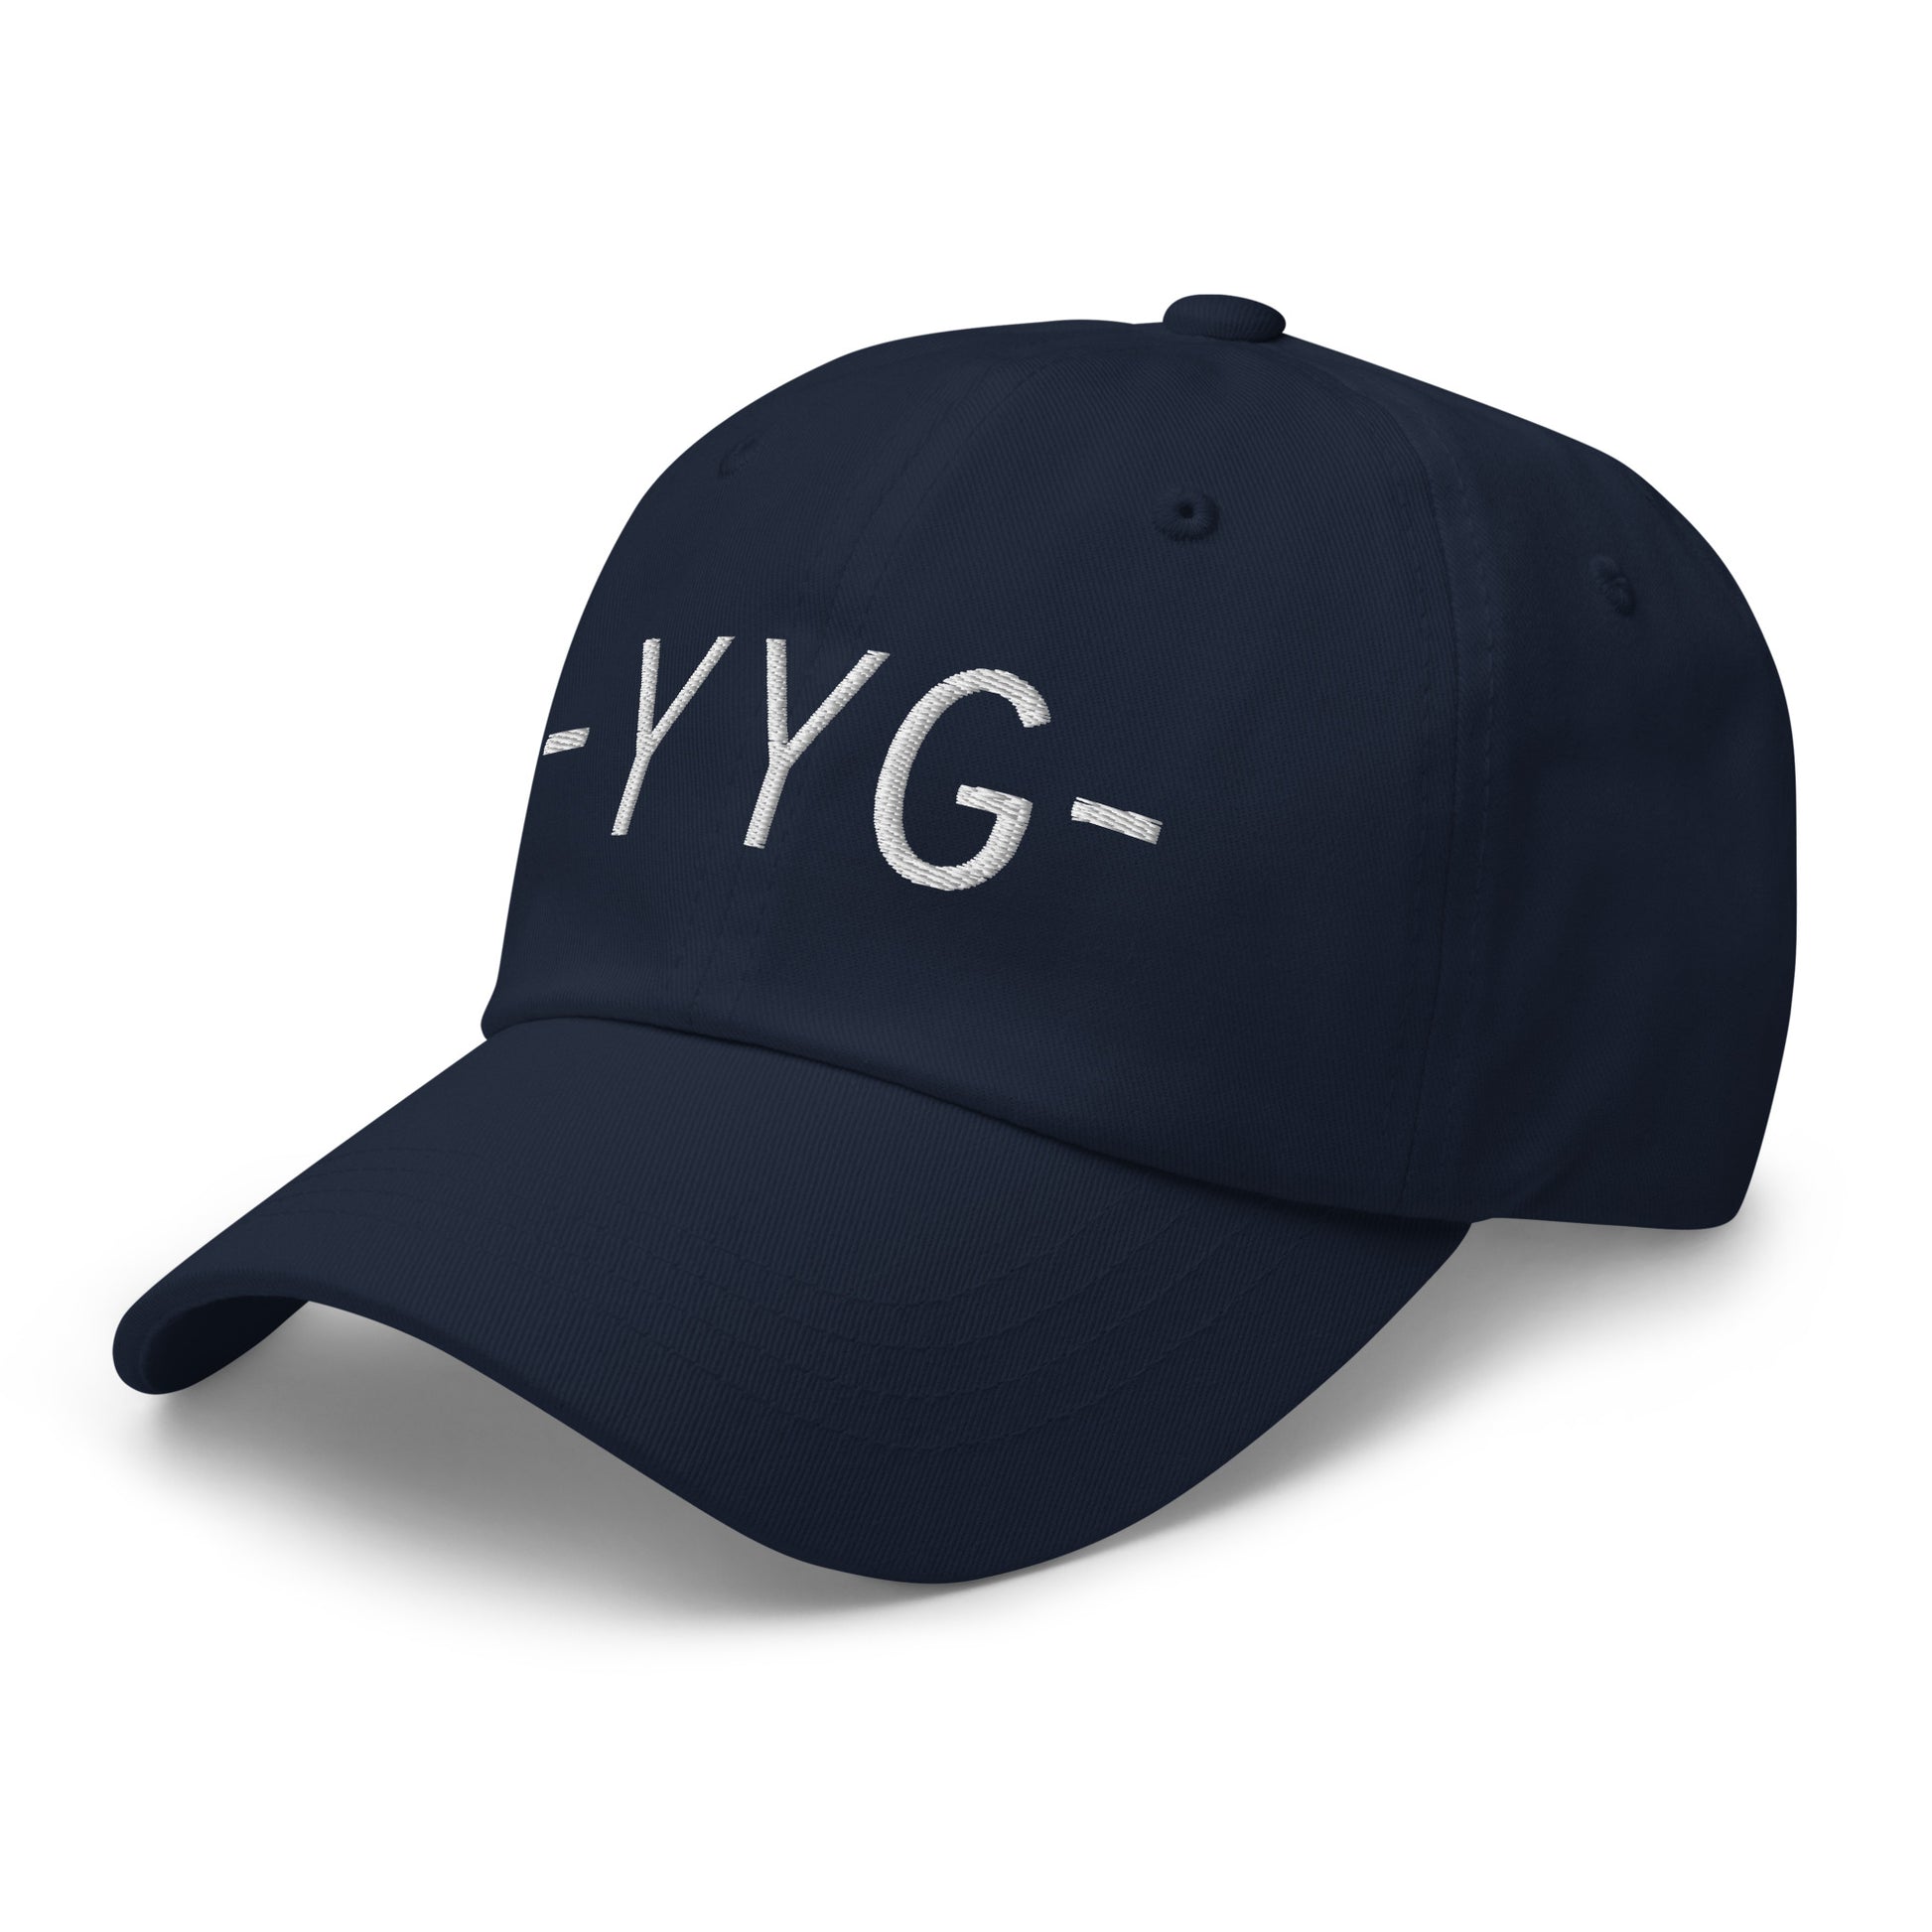 Souvenir Baseball Cap - White • YYG Charlottetown • YHM Designs - Image 15